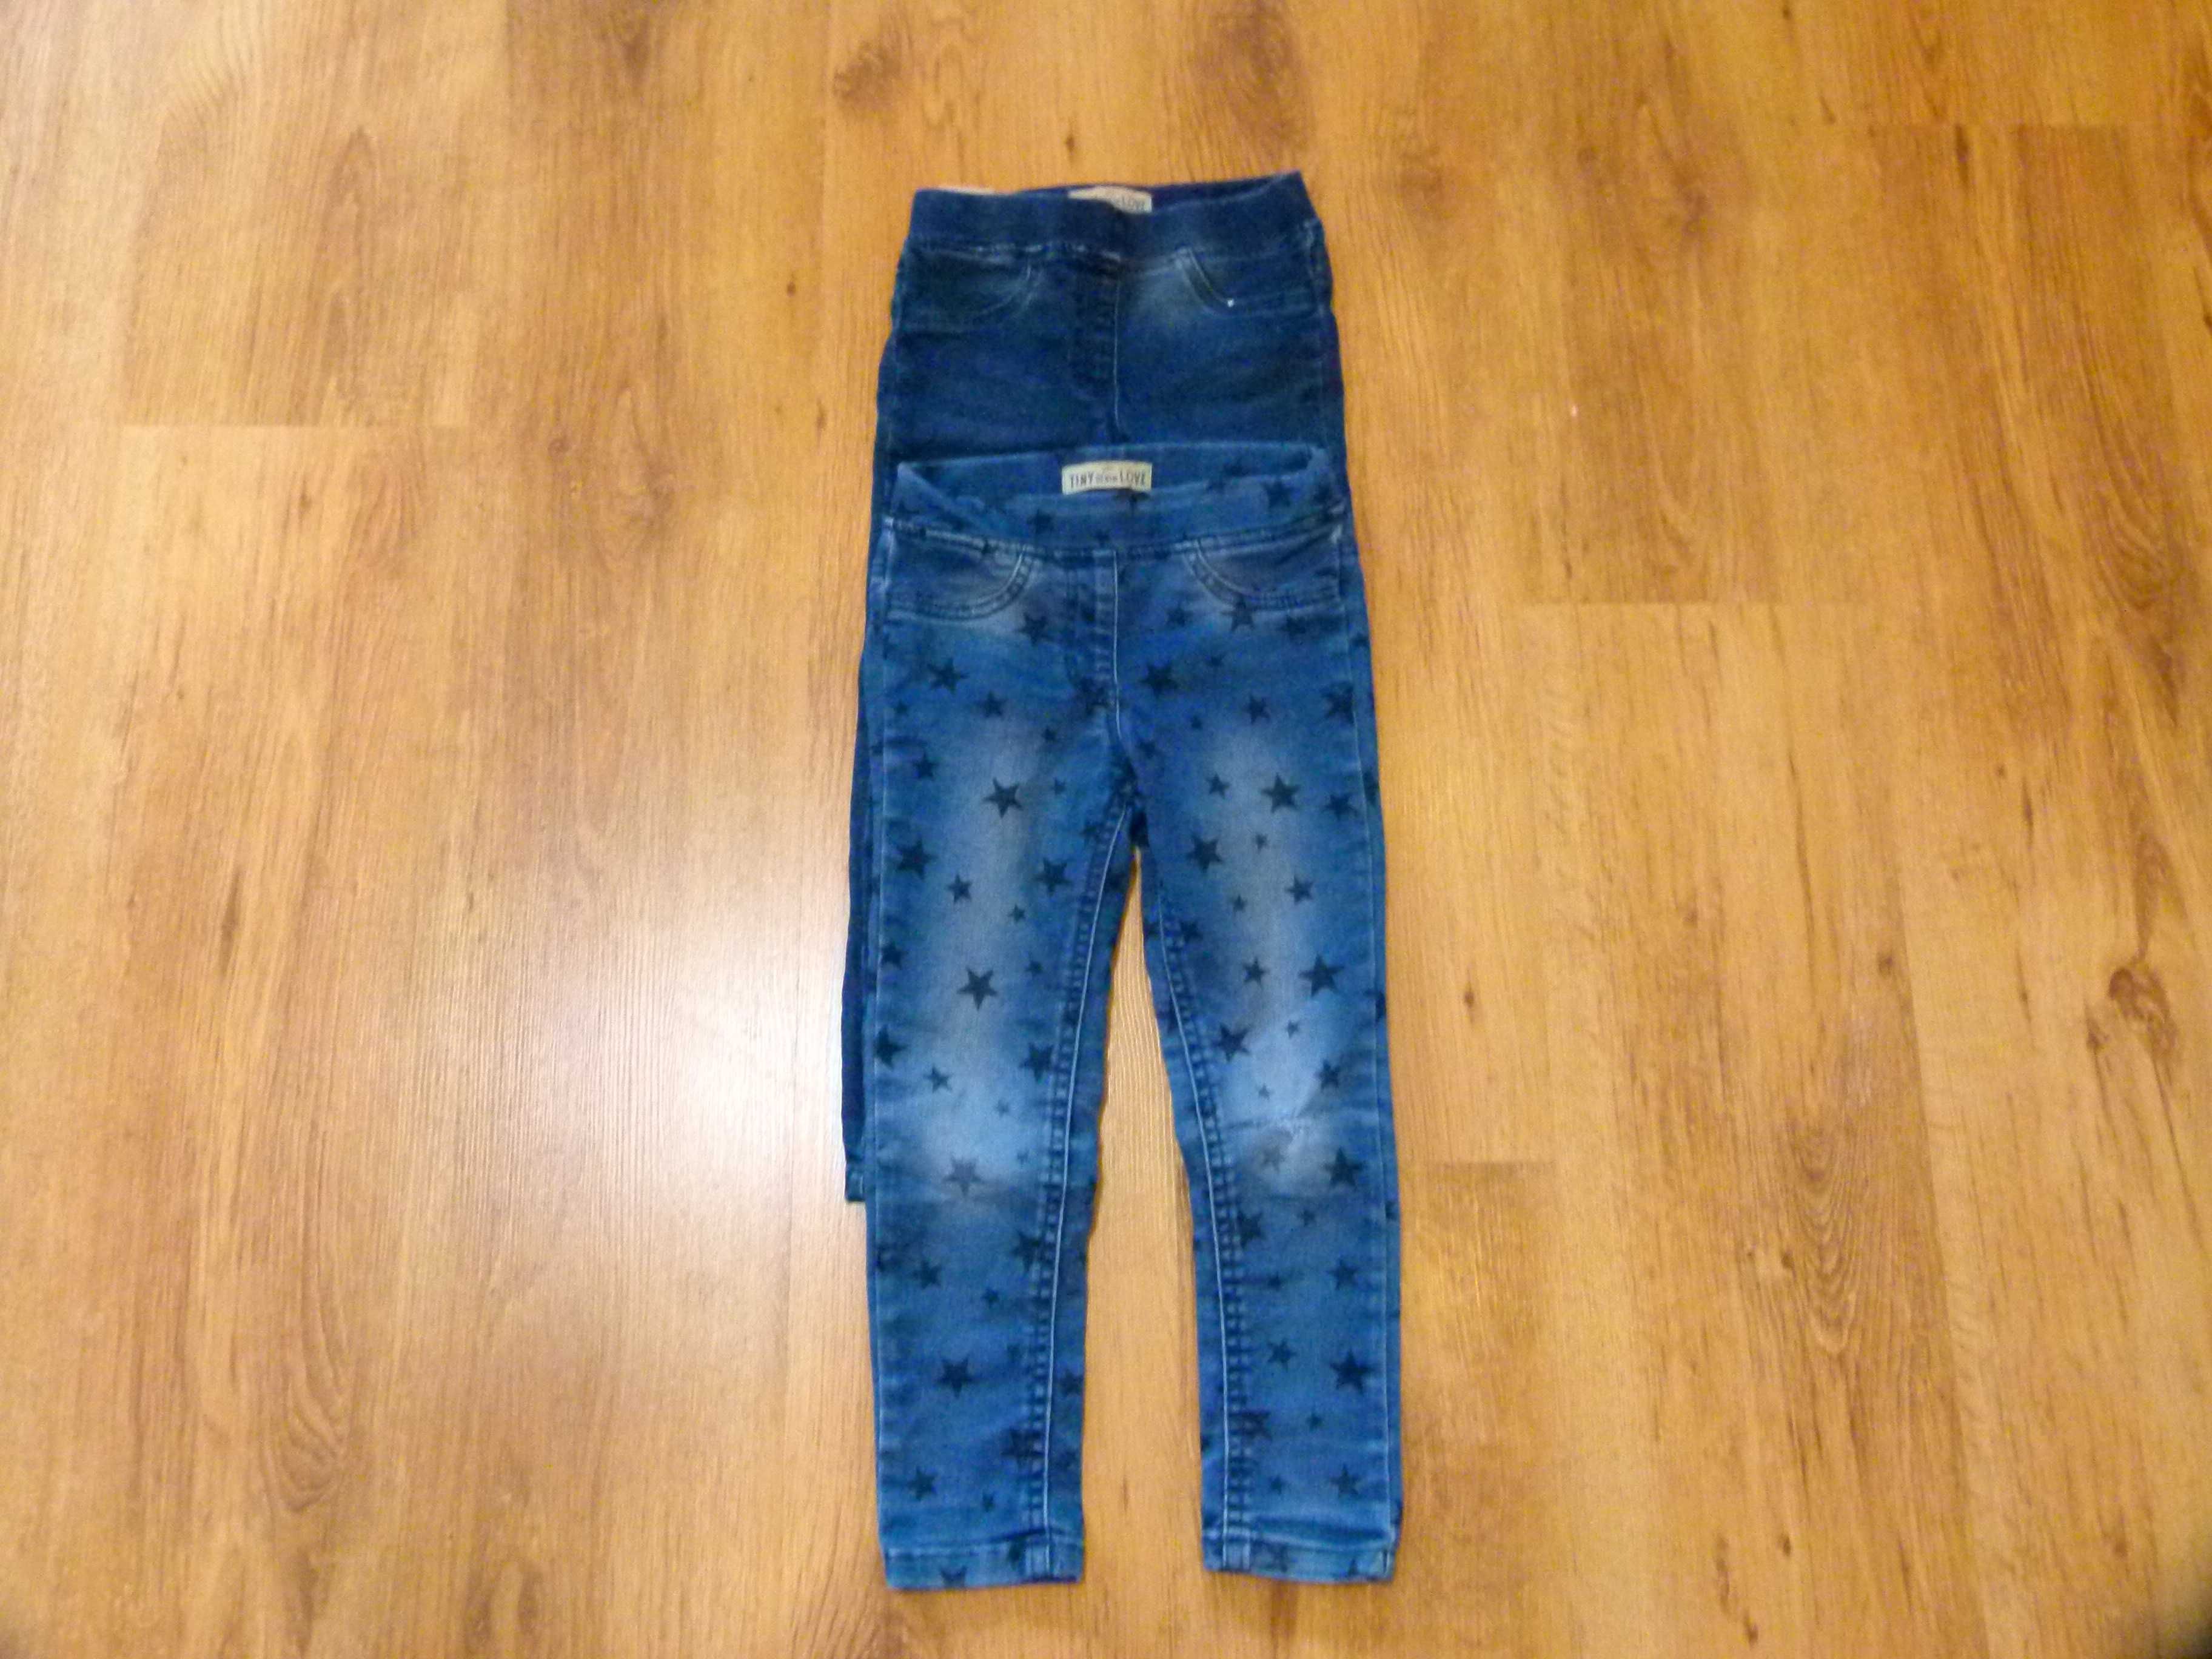 rozm 104 Pocopiano zestaw 2x spodnie jeans  rurki